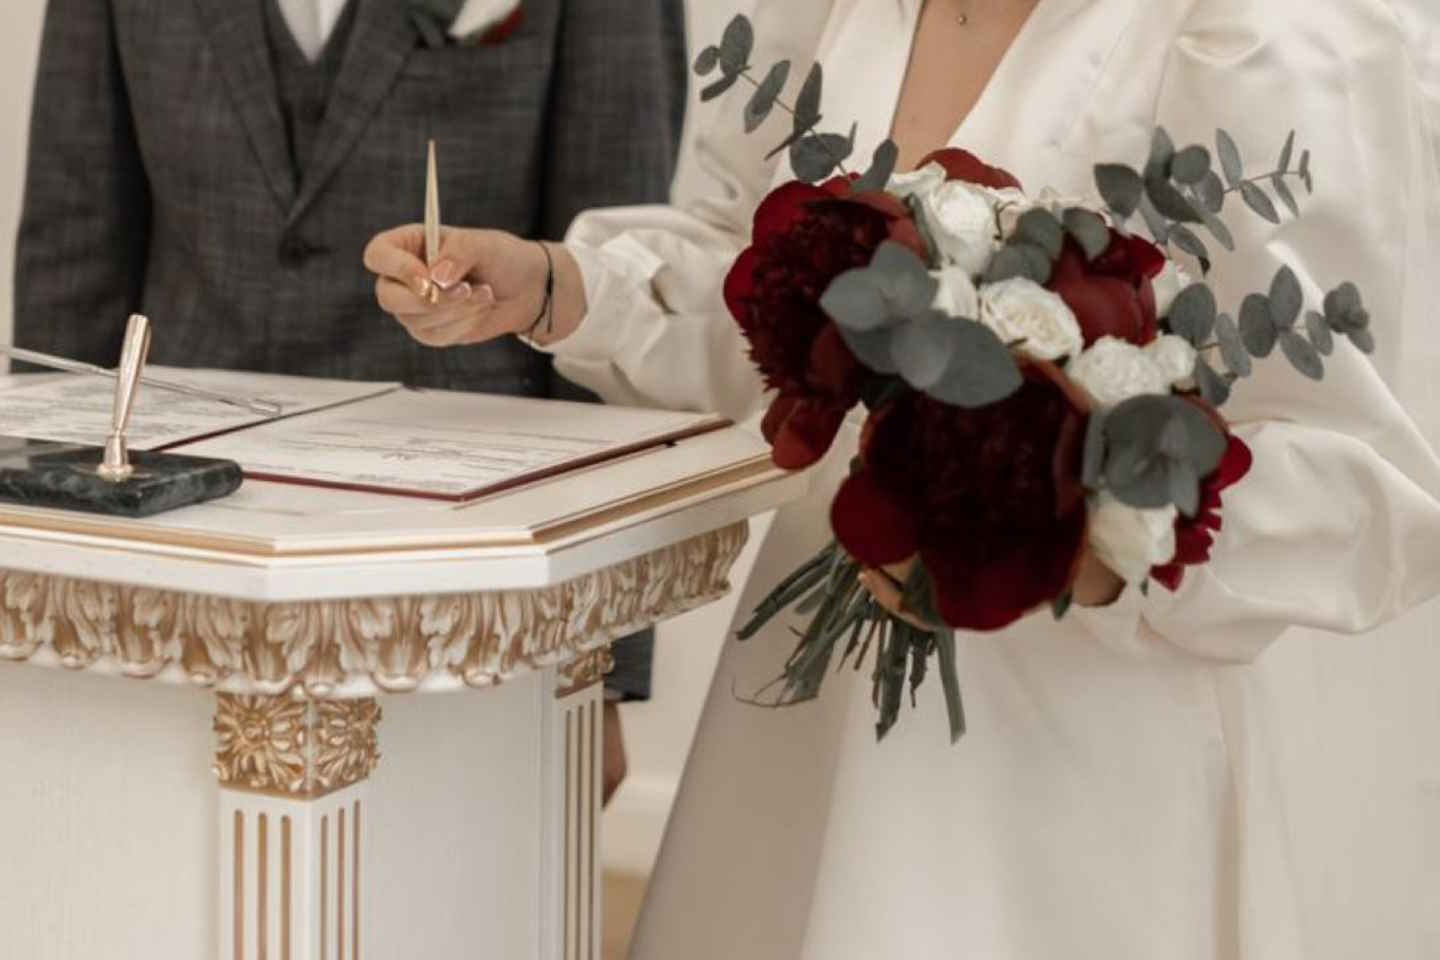 Усть-Каменогорск и ВКО / Зеркальная дата: В Усть-Каменогорске сегодня зарегистрировали брак почти 70 пар